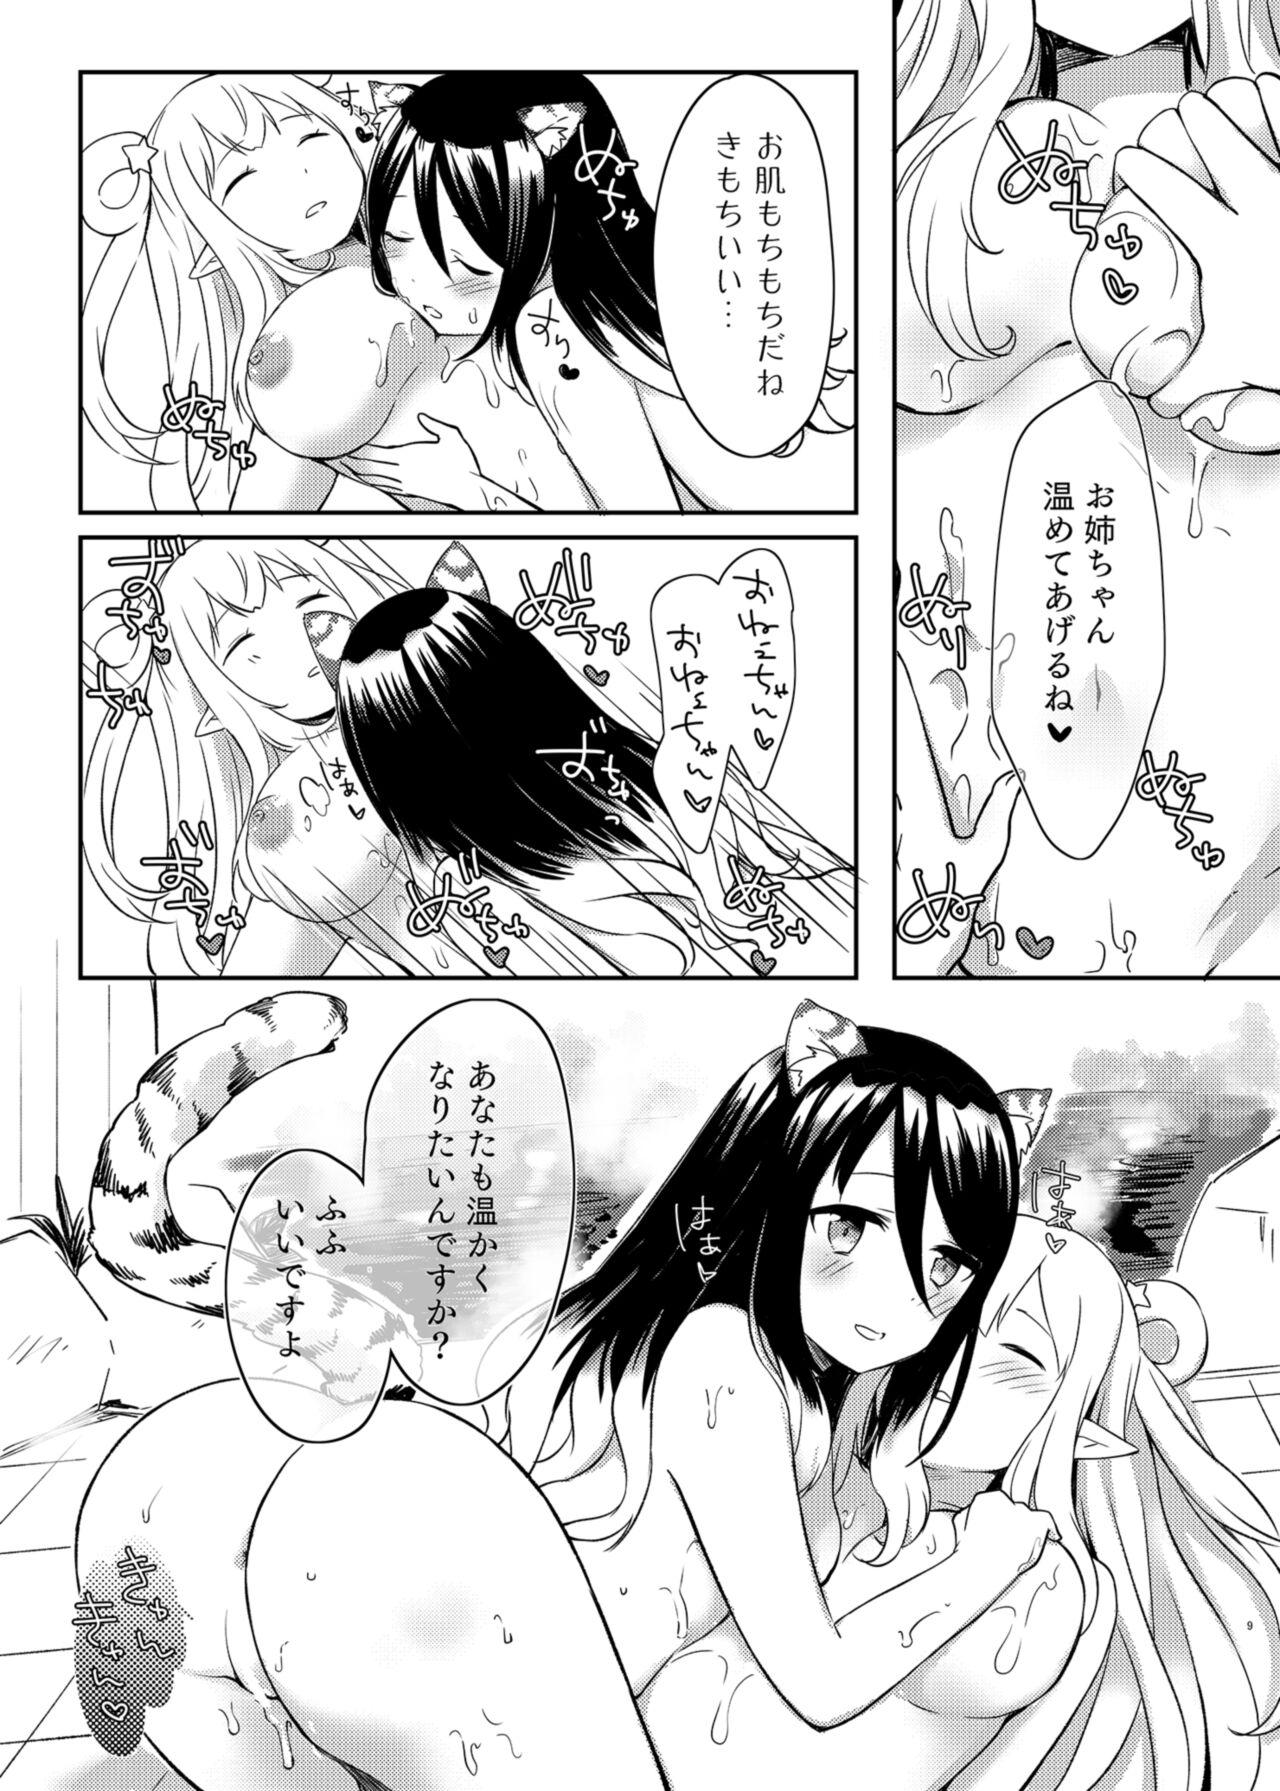 Babes Hatsune to Shiori no Yukemuri Daisakusen - Princess connect Gaydudes - Page 9